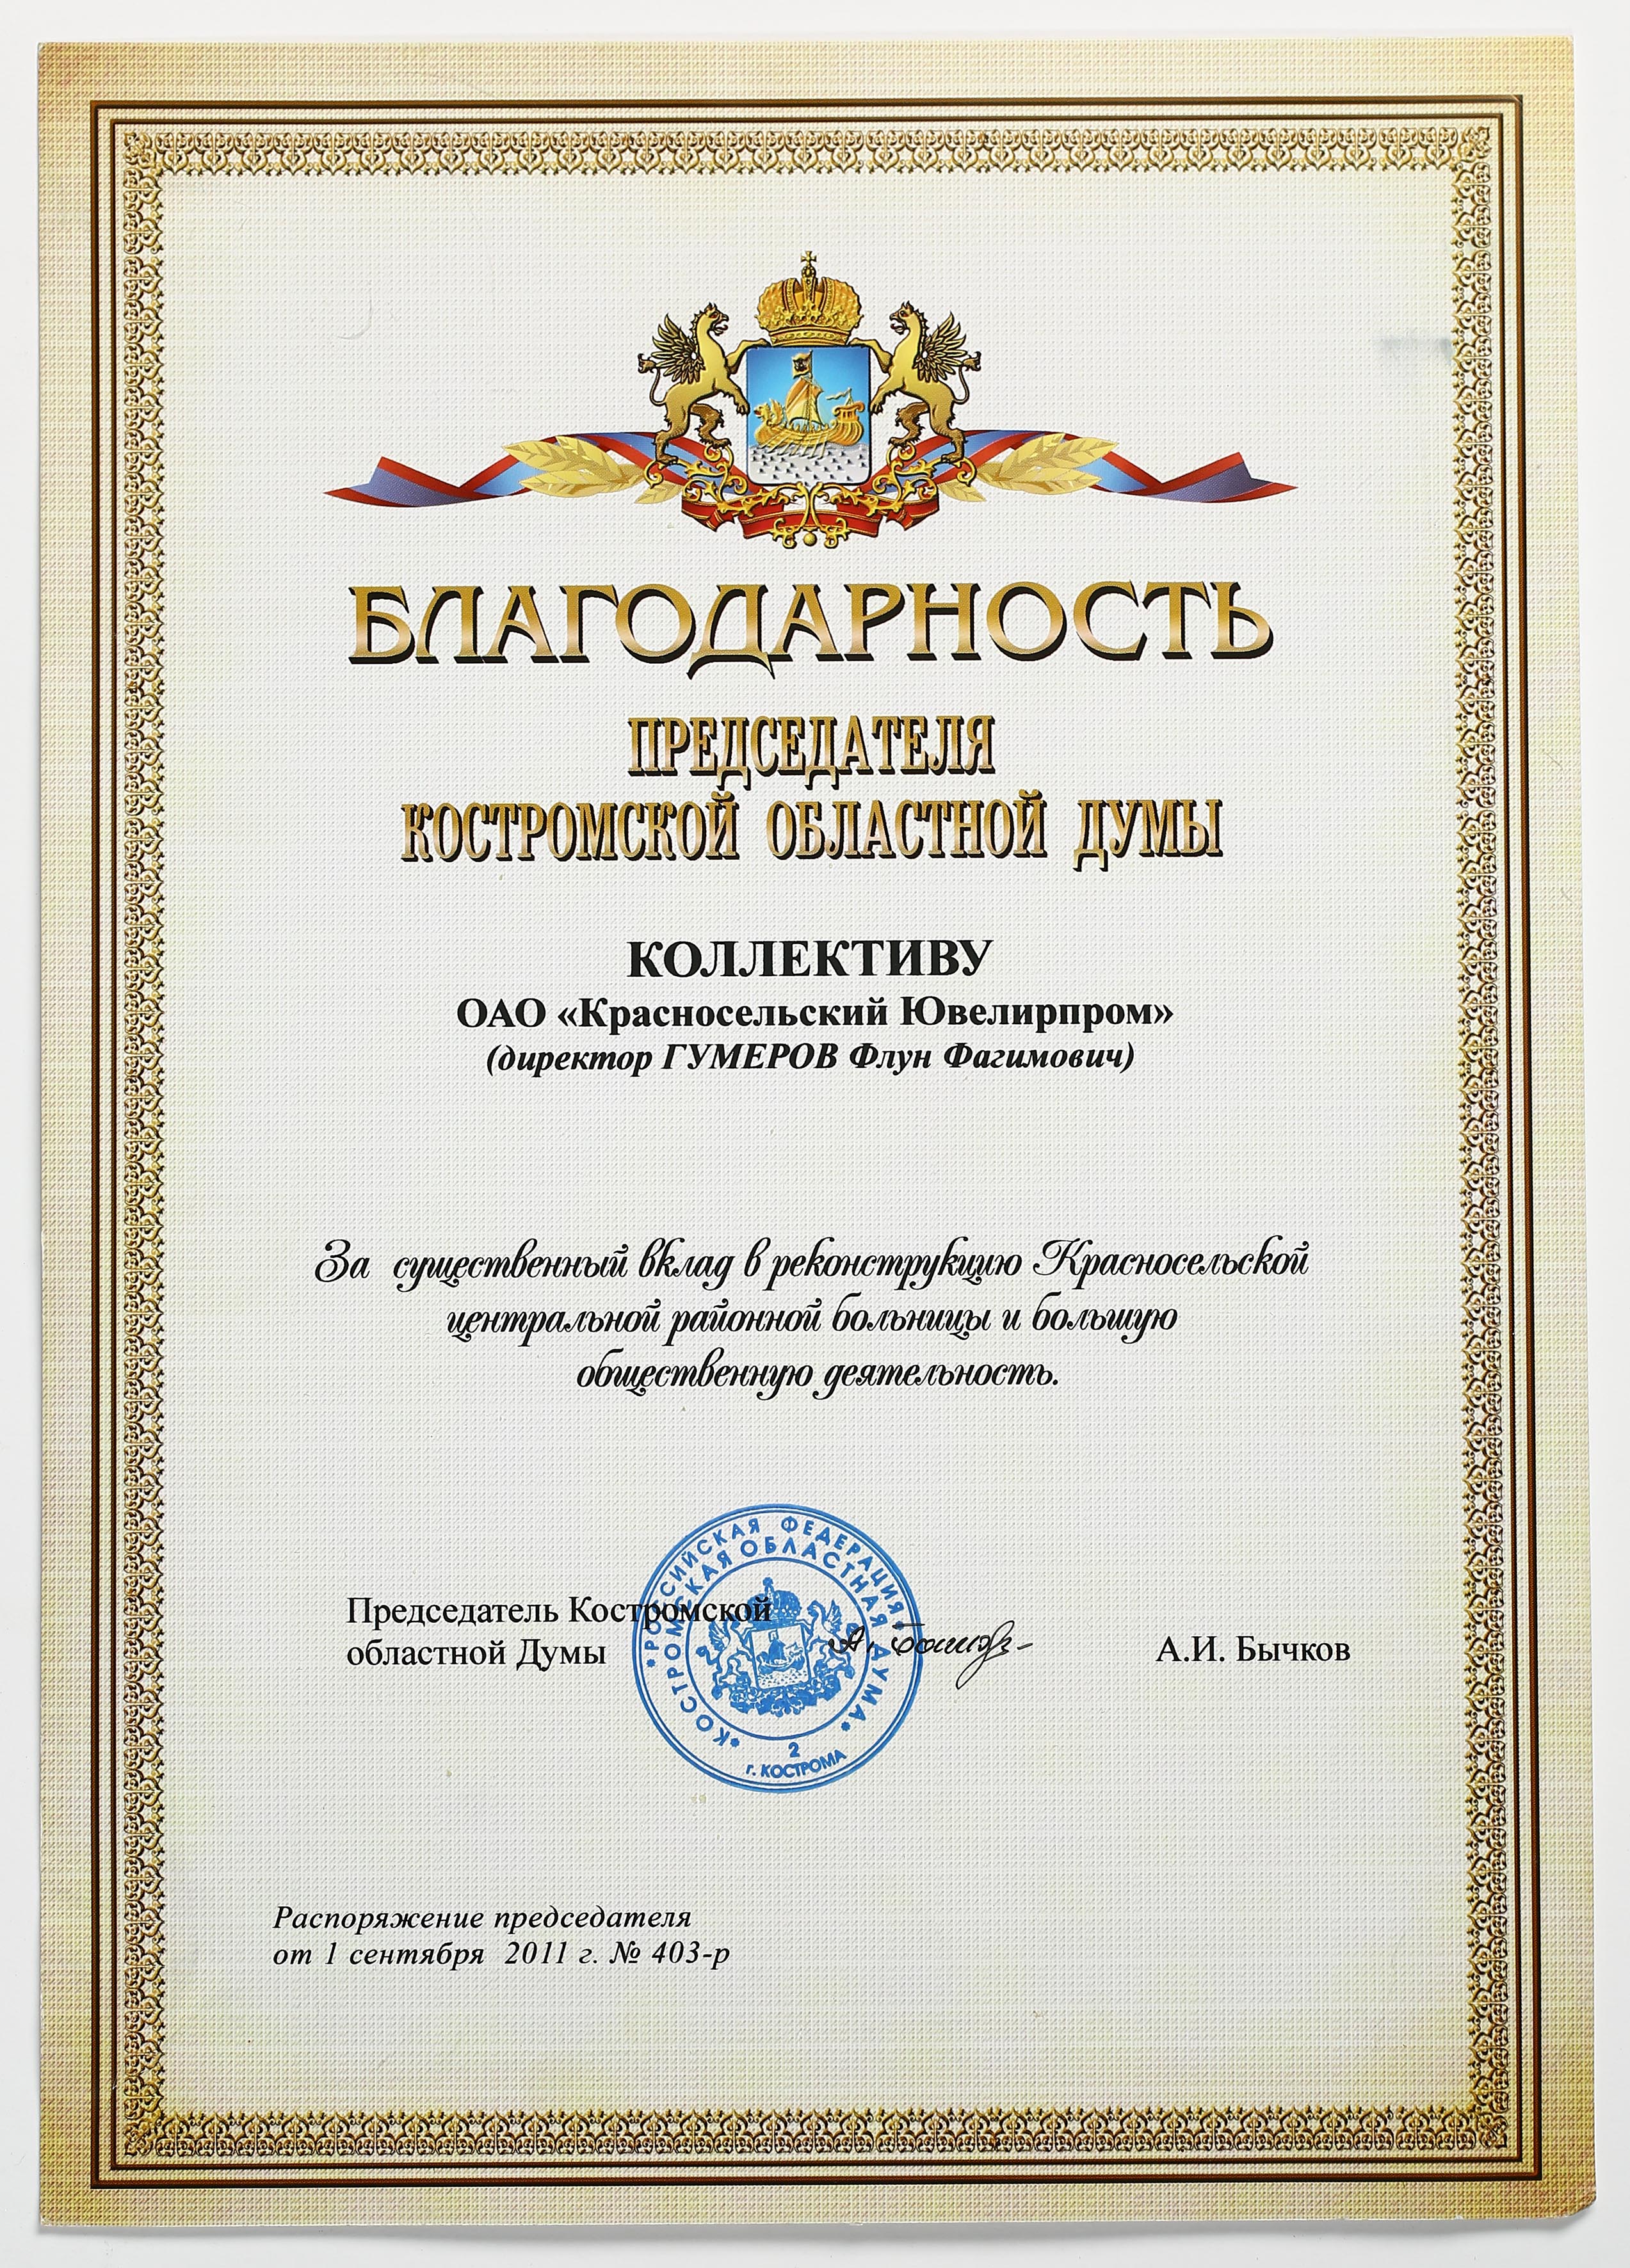 Благодарность от Председателя Костромской областной Думы А.И. Бычкова